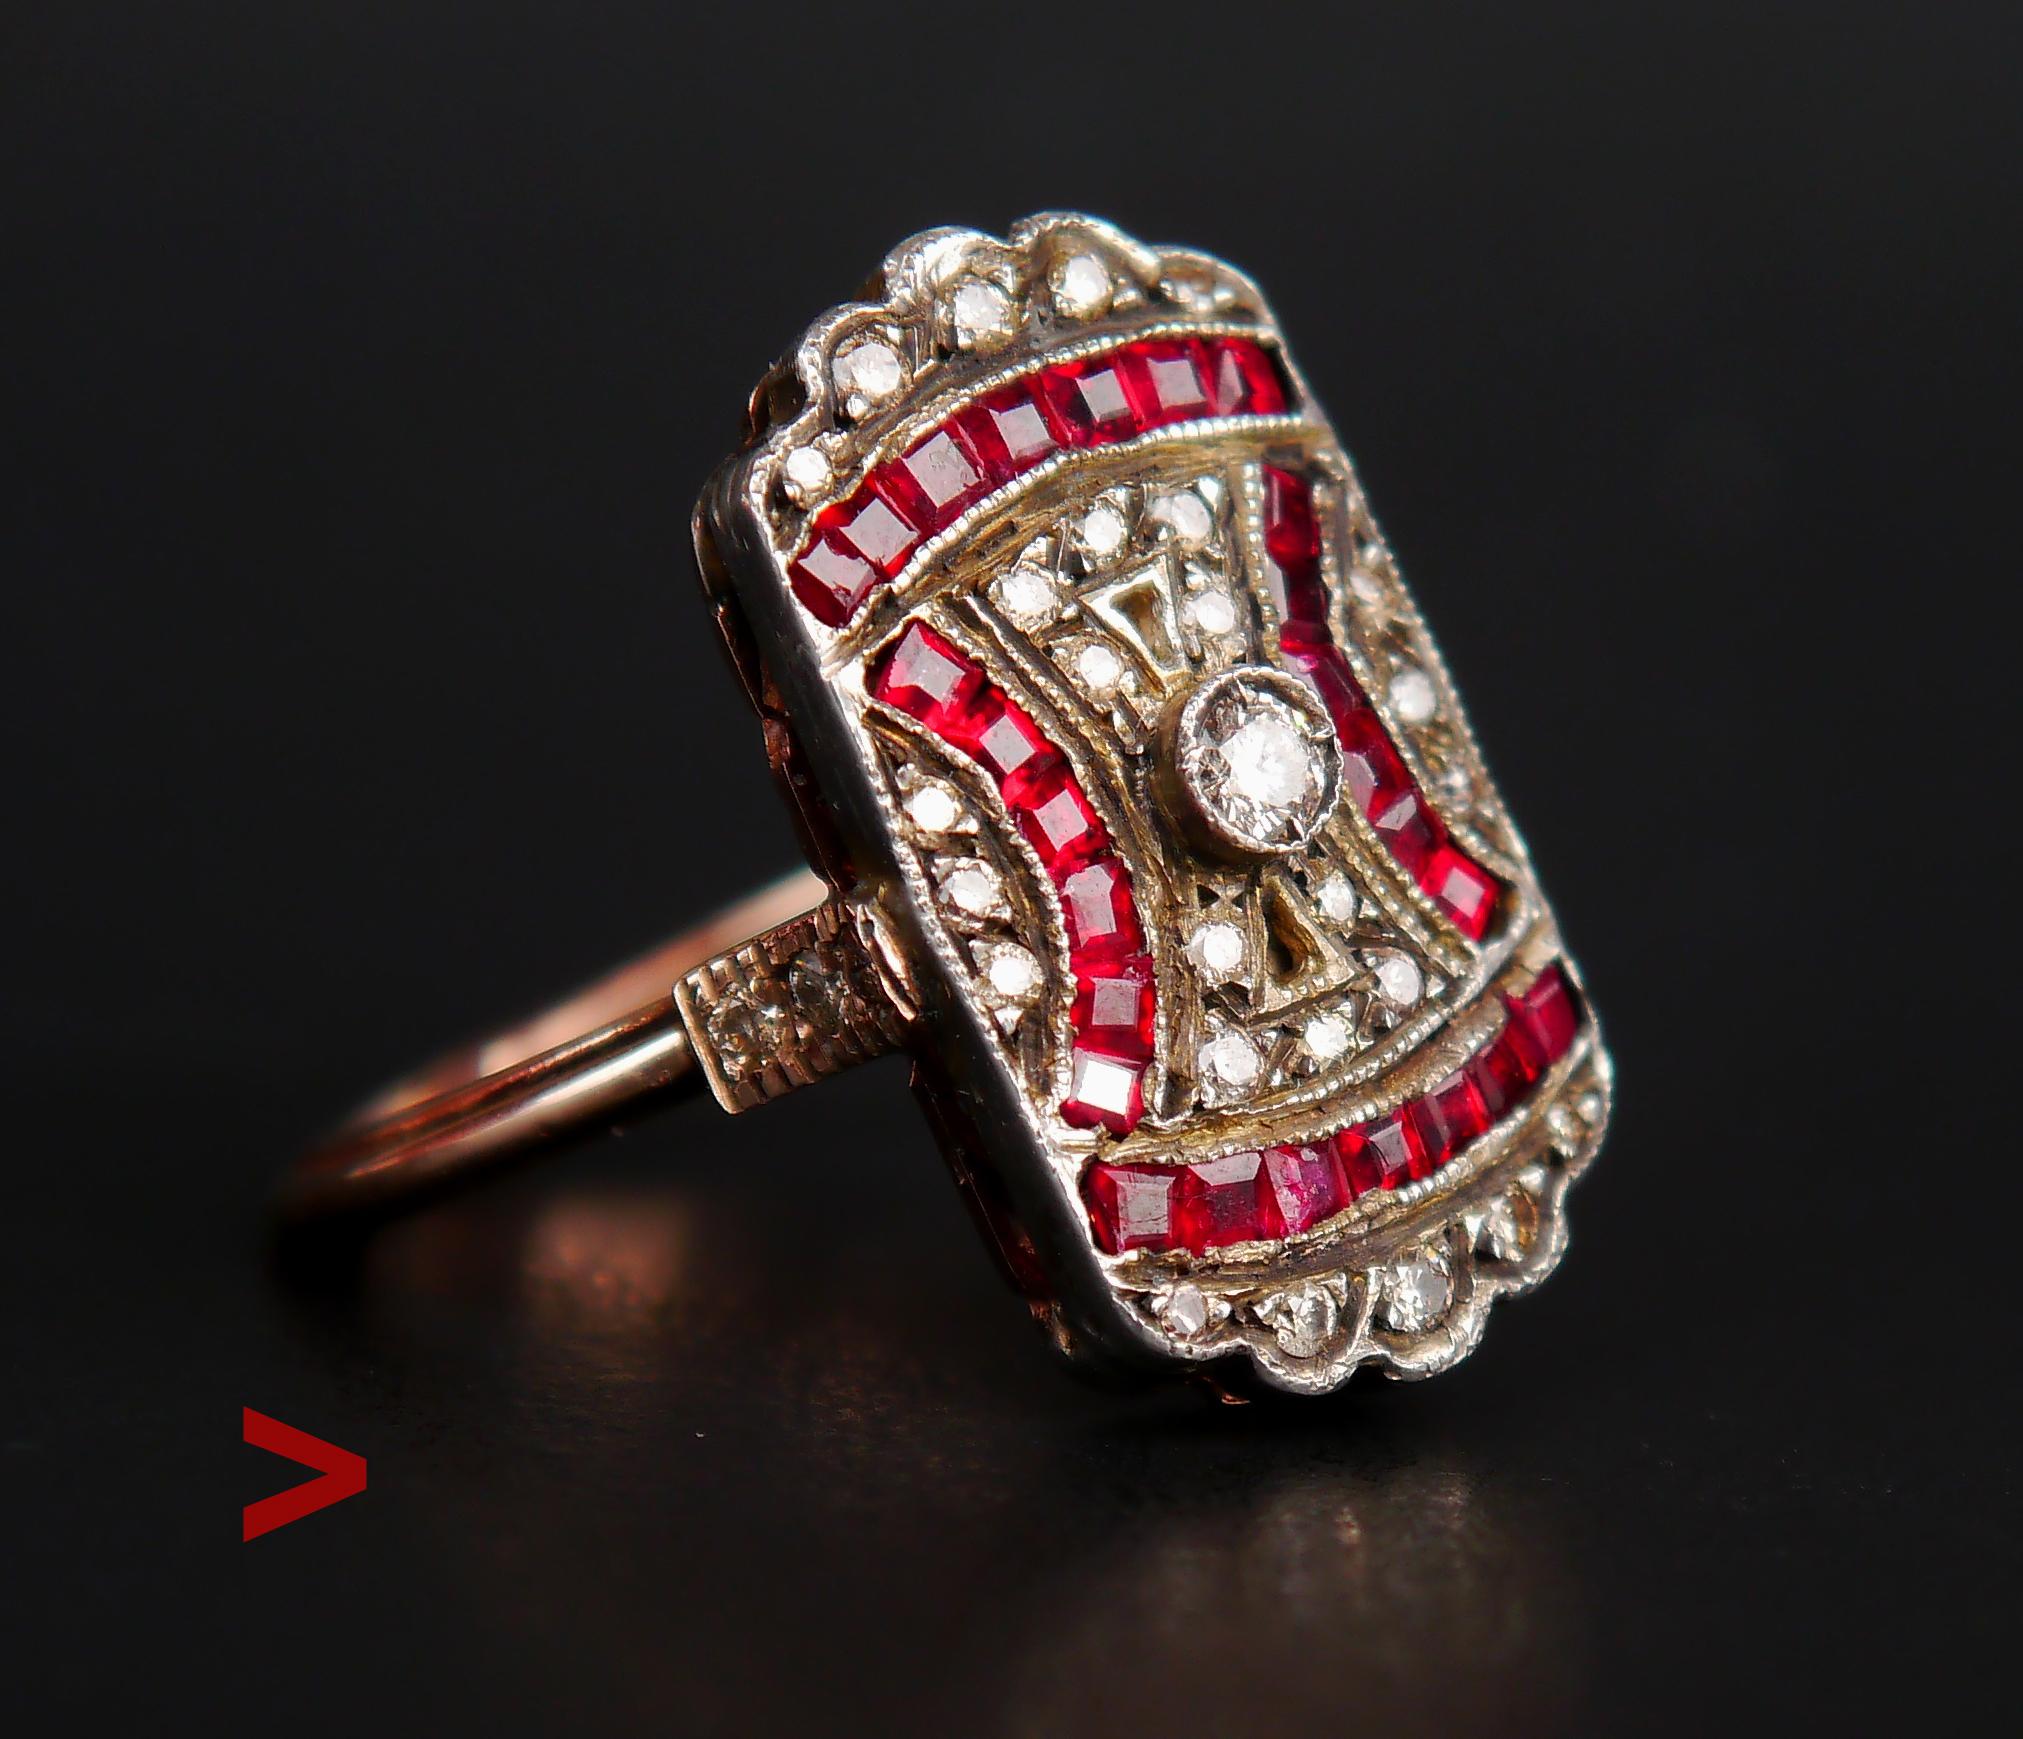 Antike frühen 1900's fanciest europäischen Cluster Ring mit Silber auf solide 14K Rose Gold mit Diamanten und Rubinen. Vermutlich aus deutscher oder französischer Produktion stammend, war dieser Ring Teil der Trophäen eines Offiziers der Roten